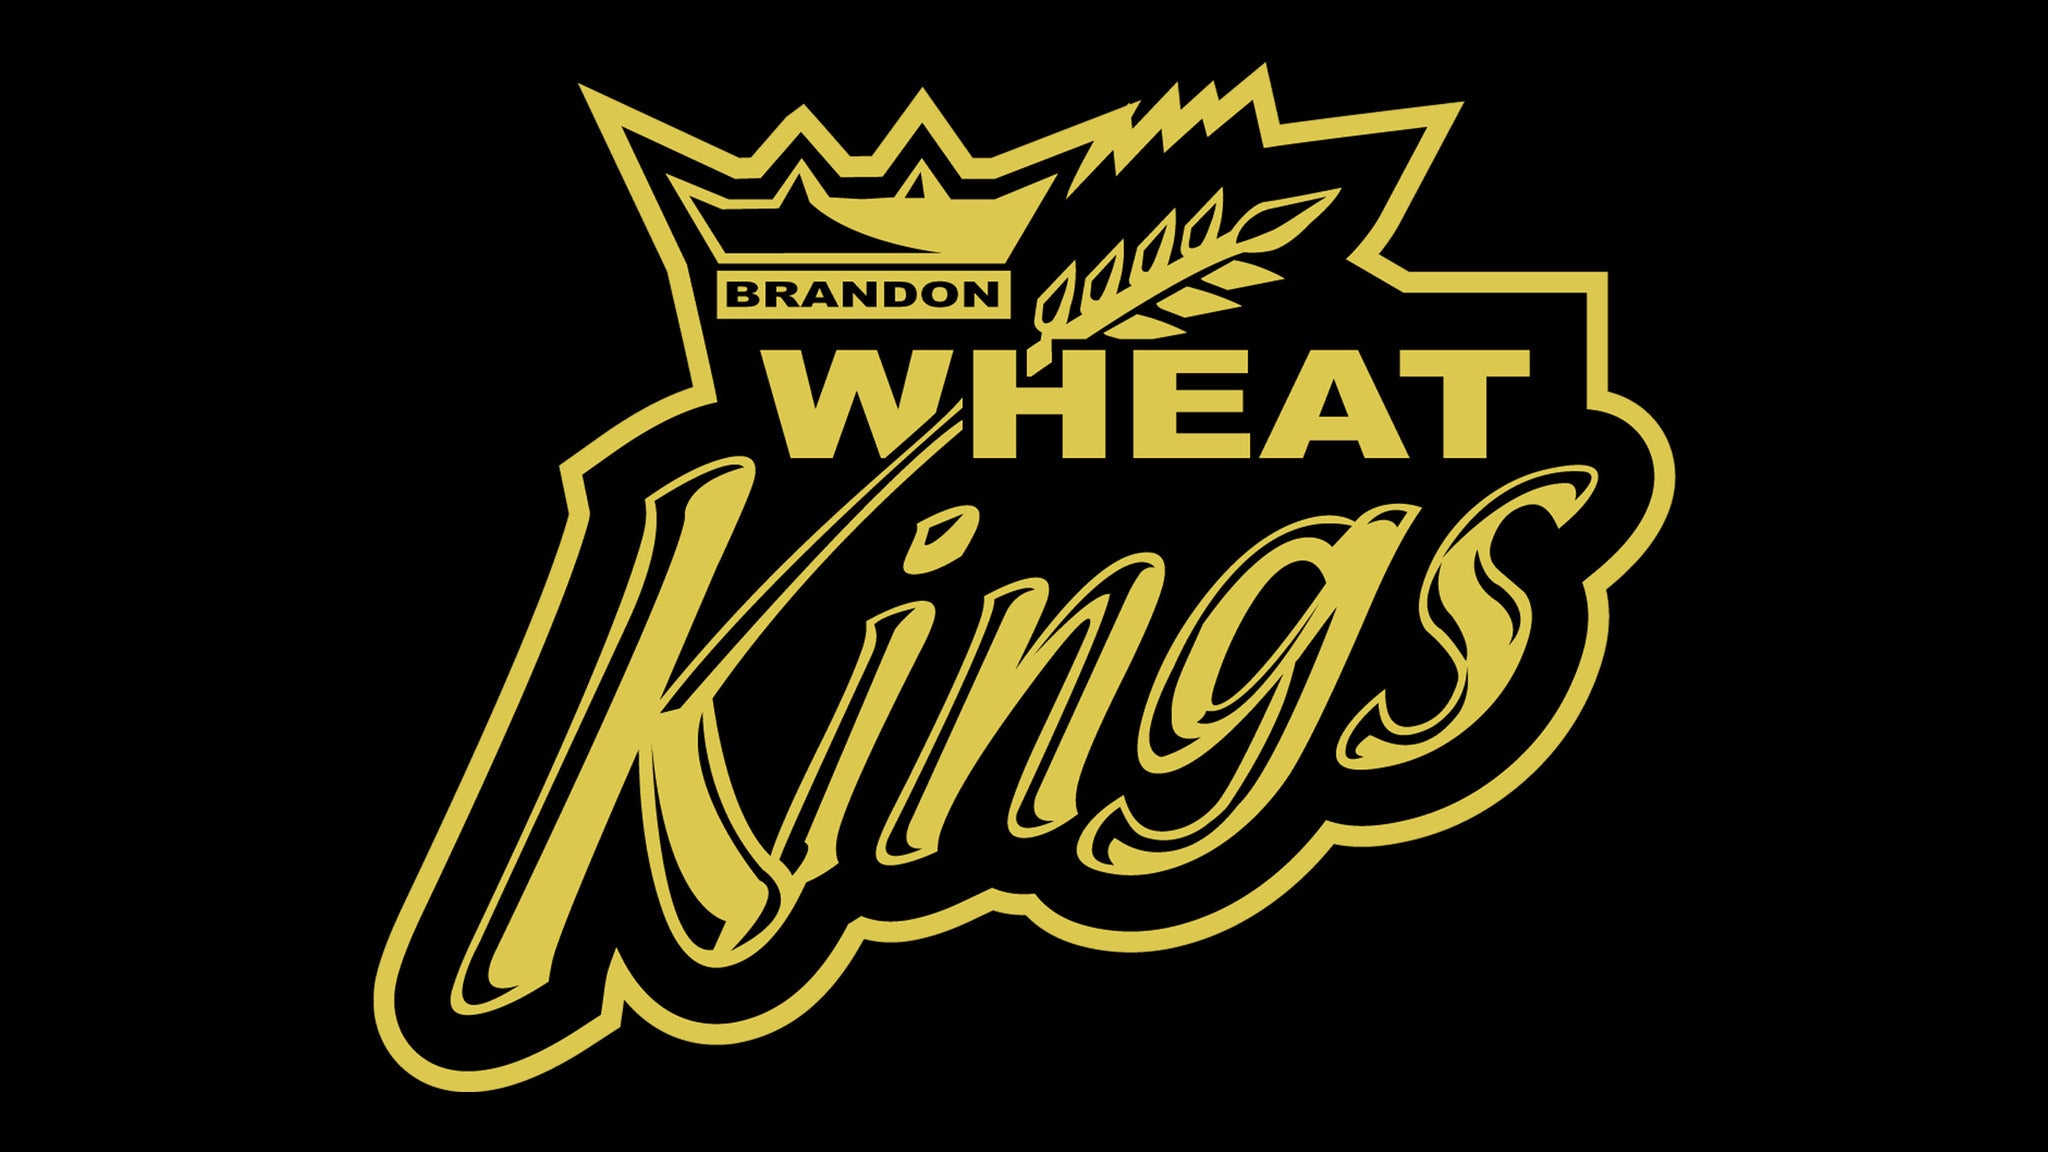 Brandon Wheat Kings vs. Edmonton Oil Kings in Brandon promo photo for Family 4 Pack presale offer code